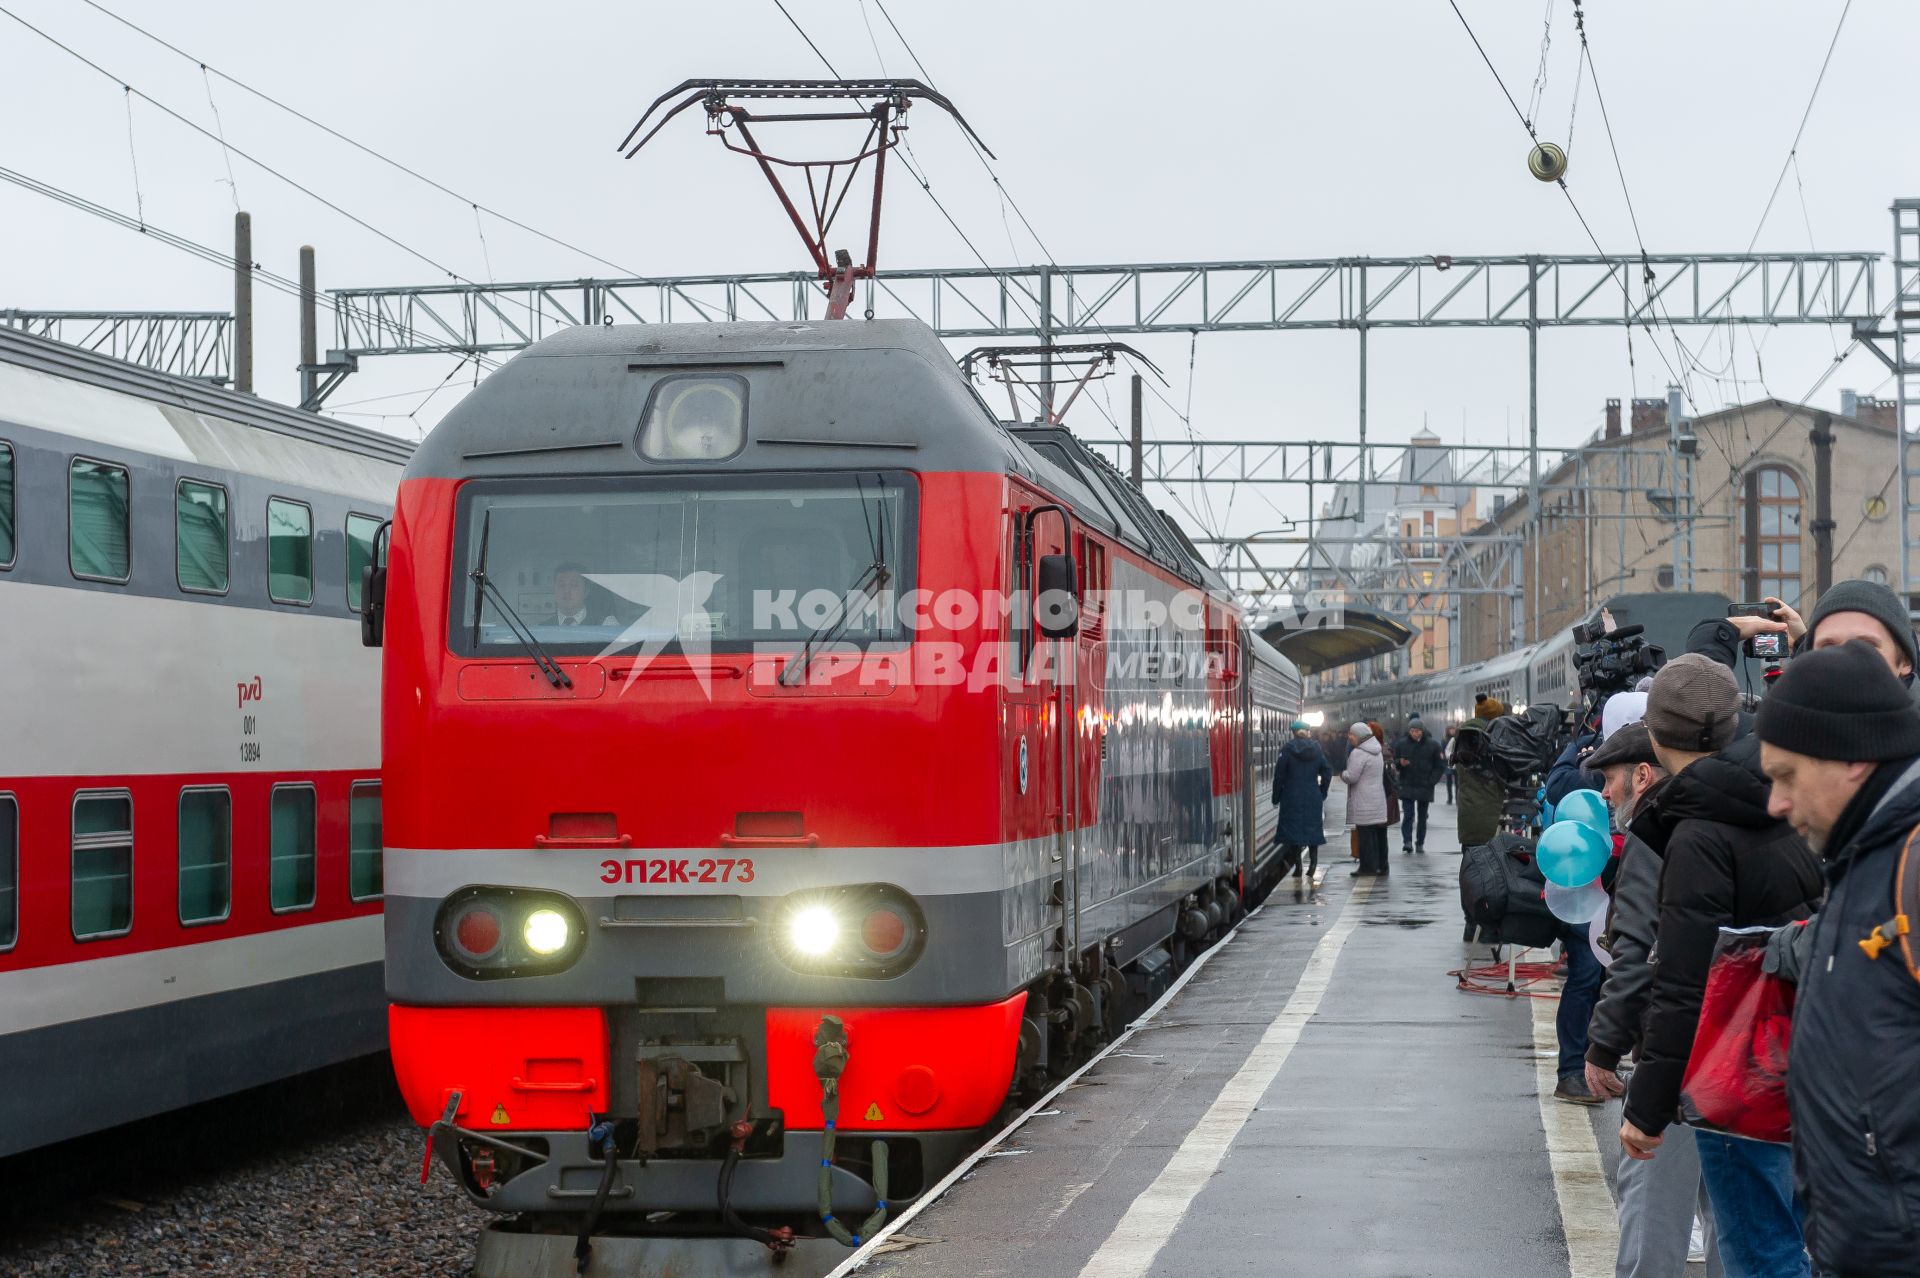 Санкт-Петербург. Отправление  первого пассажирского поезда из Санкт-Петербурга в Севастополь через Крымский мост.